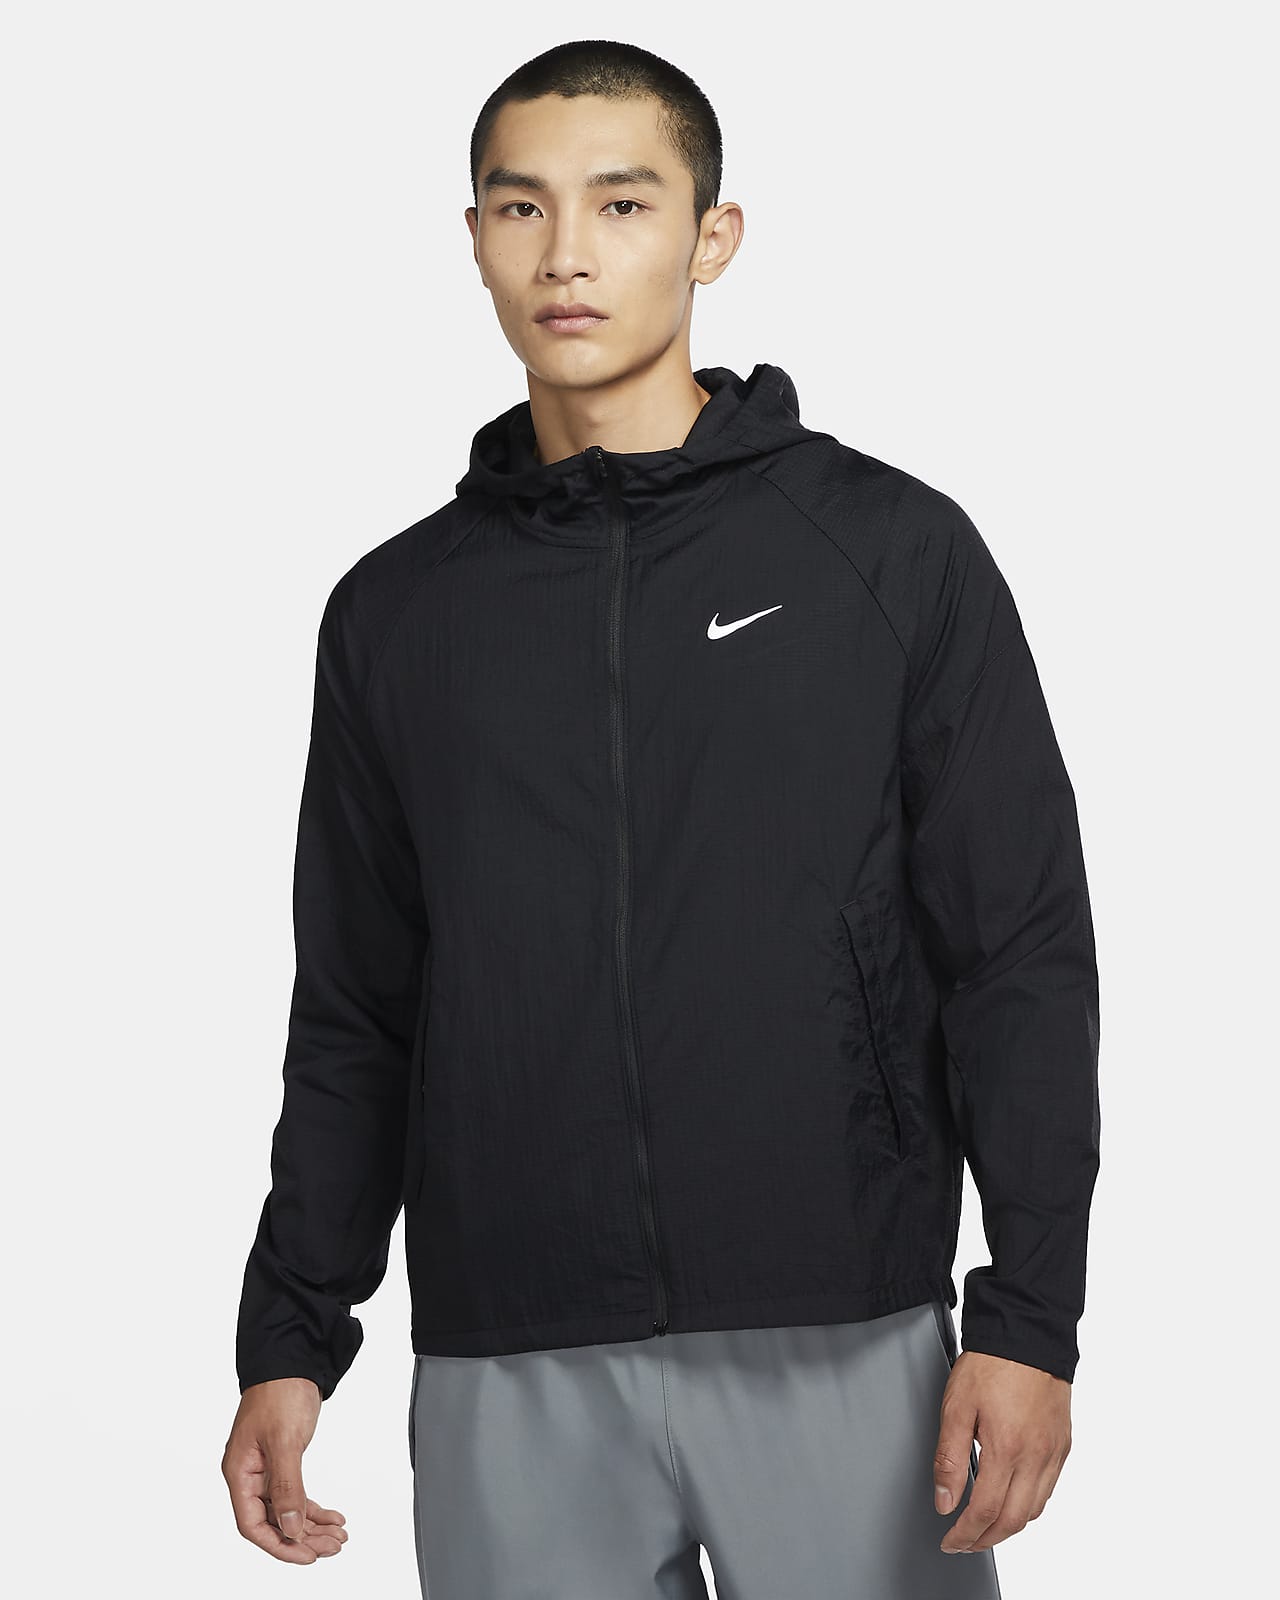 Misbruge At accelerere indad Nike Essential Men's Hooded Running Jacket Switzerland, SAVE 51% - mpgc.net